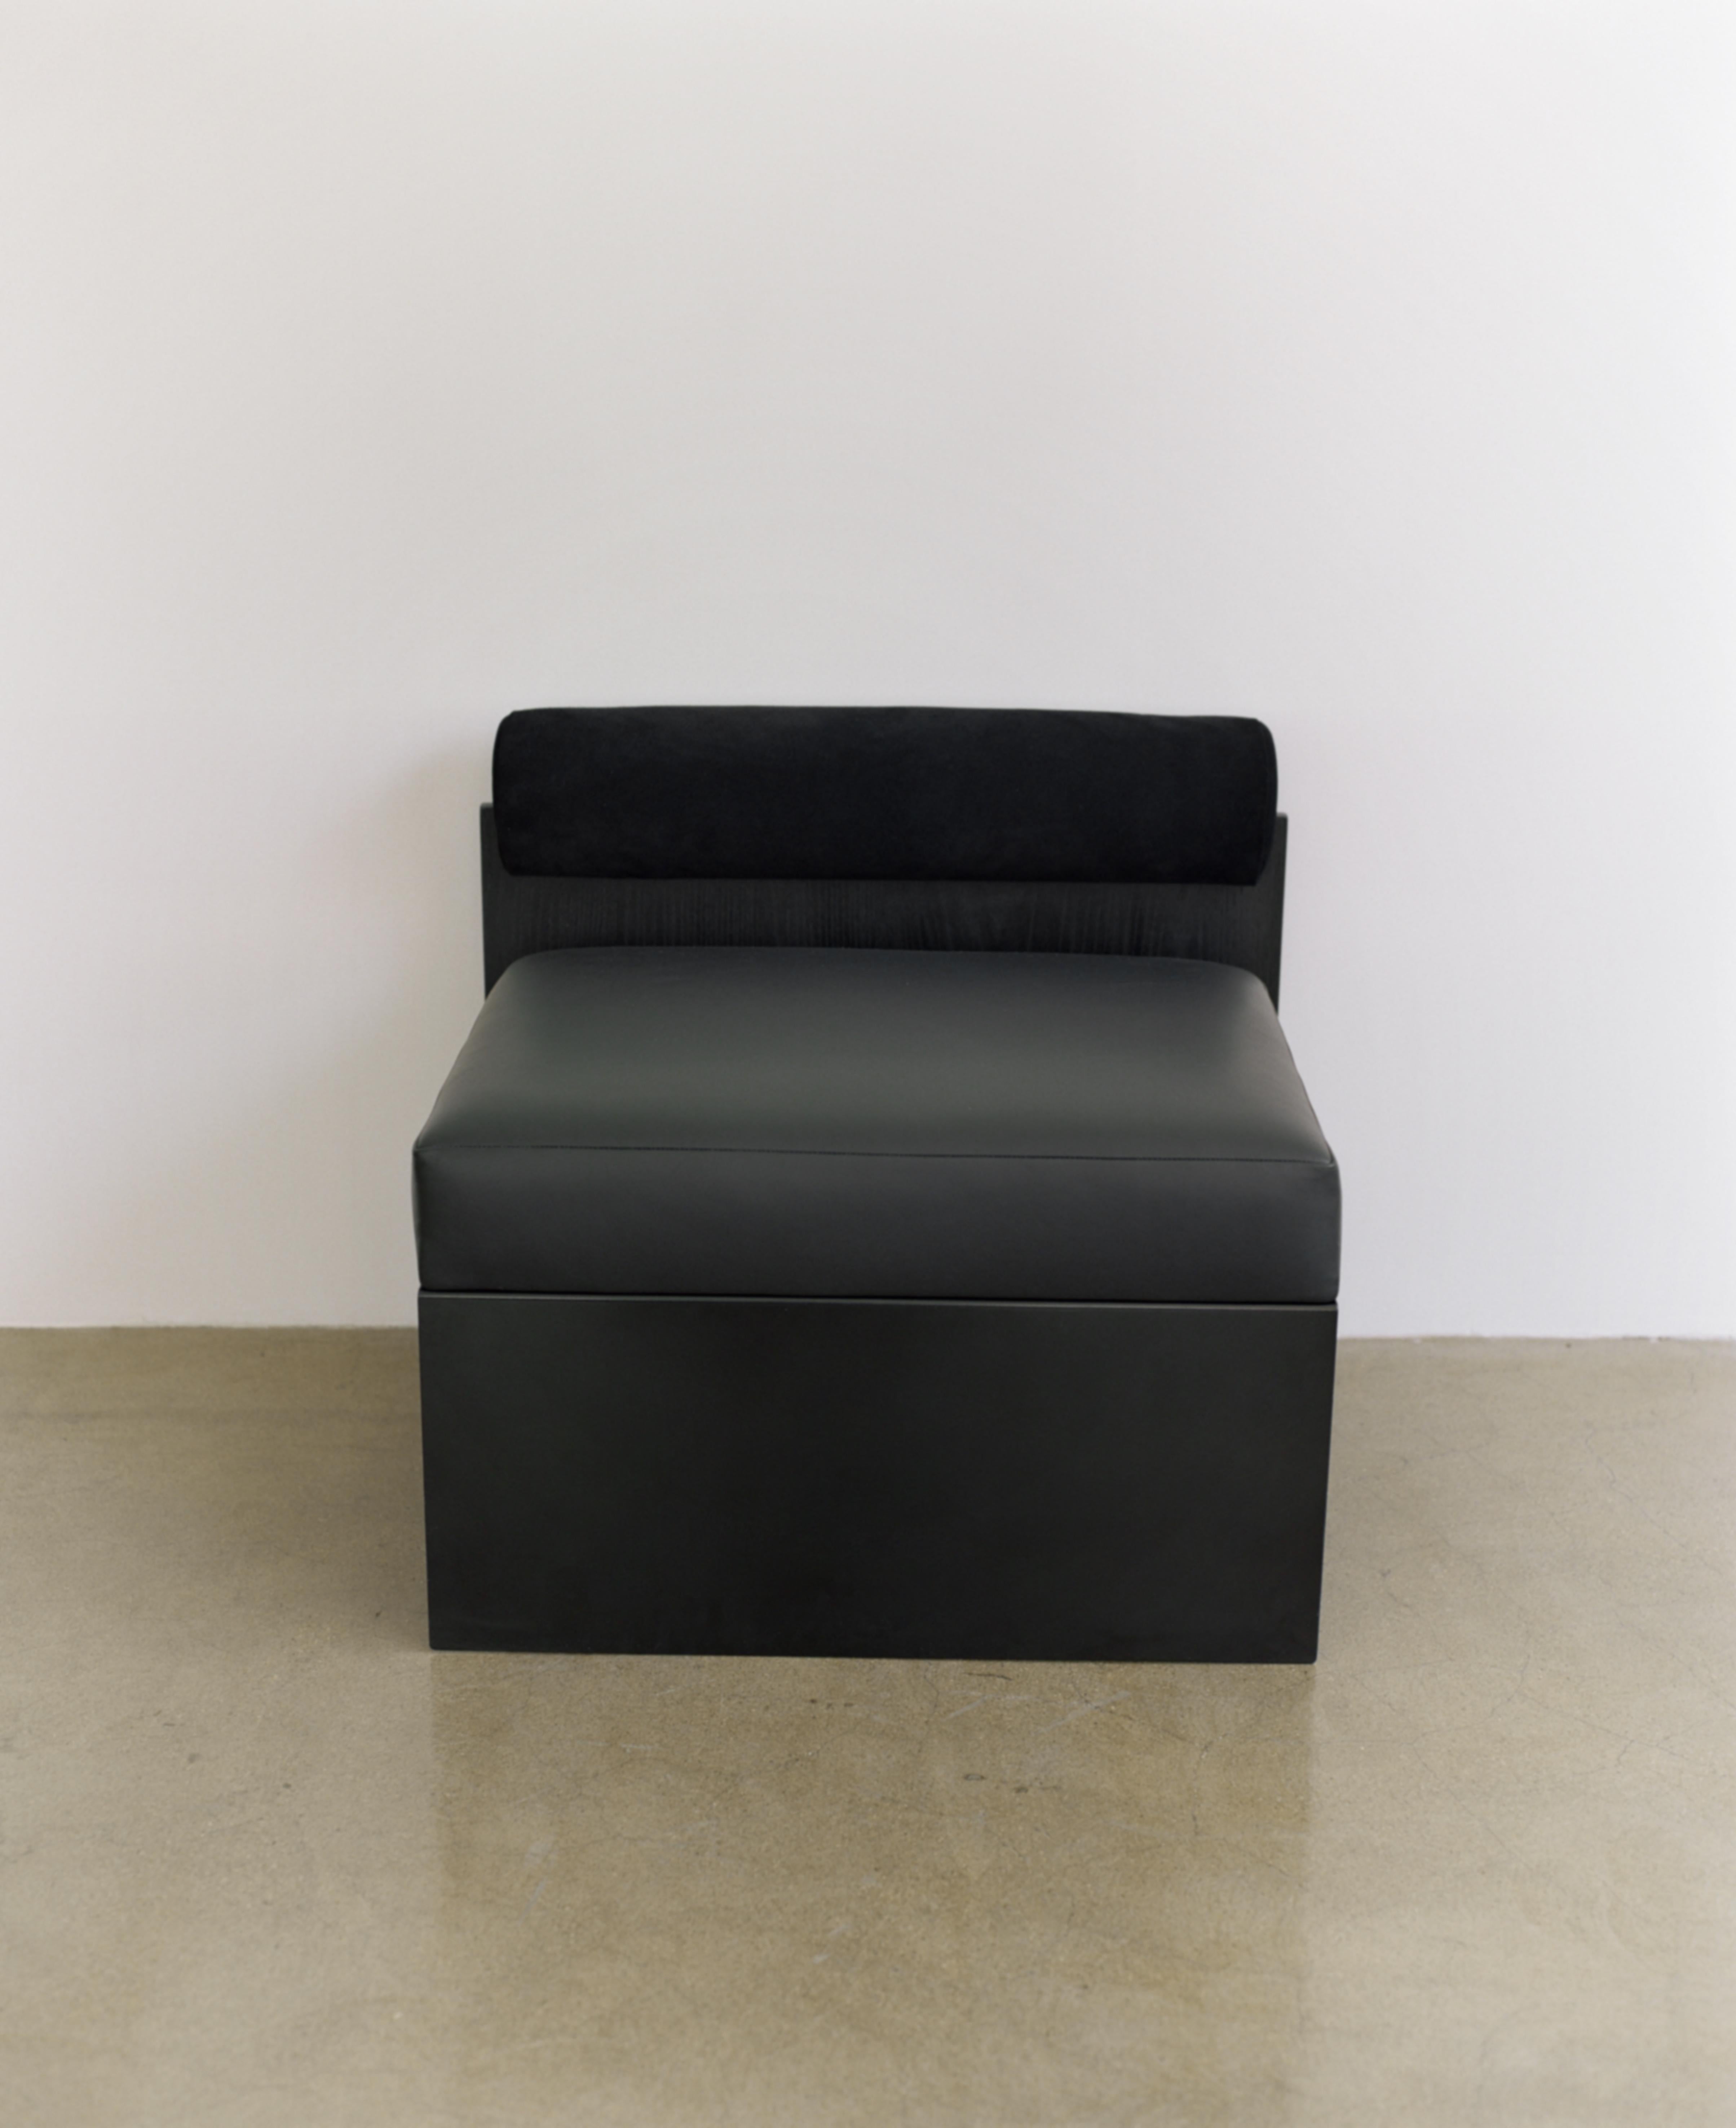 Side Lounge Chair Building Blocks: Eine Illusion, die durch ihr Design mit positiven und negativen Formen spielt. Die weiße Version ist aus Leder und einem Metallsockel gefertigt.
  
Kollektion „Baubaublocks“
Ein Satz monochromer Sitzgruppe, die